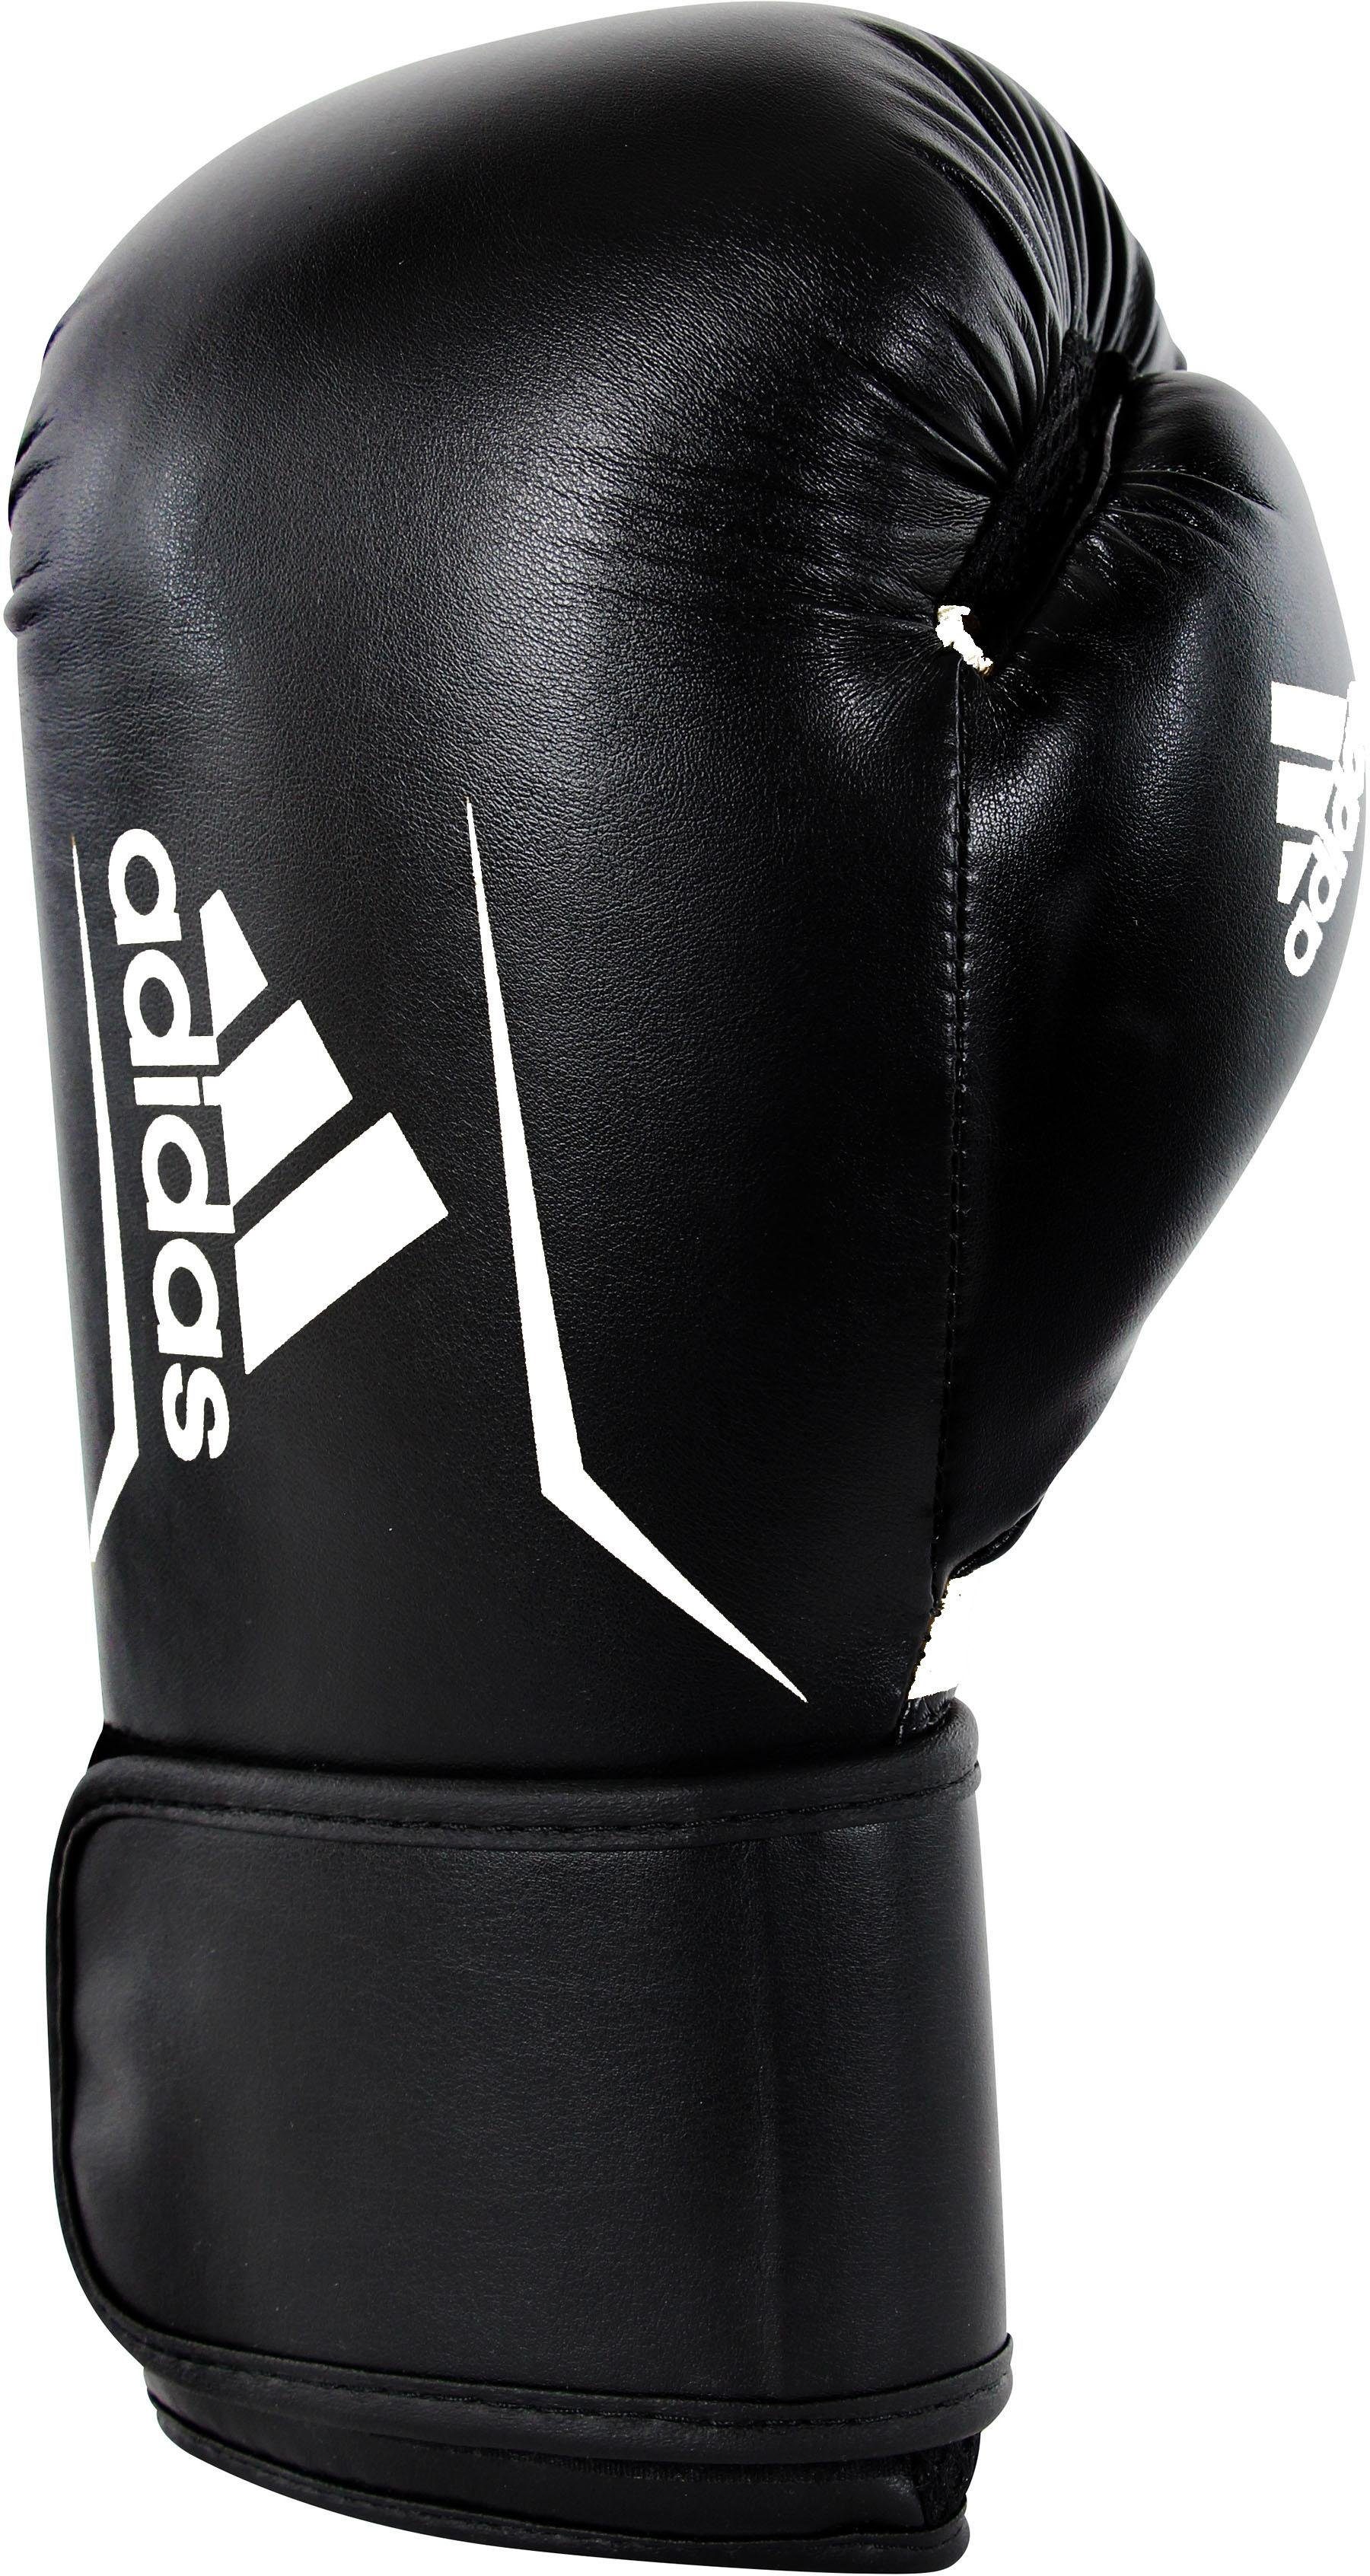 Performance Boxhandschuhe adidas Speed 100 schwarz/weiß